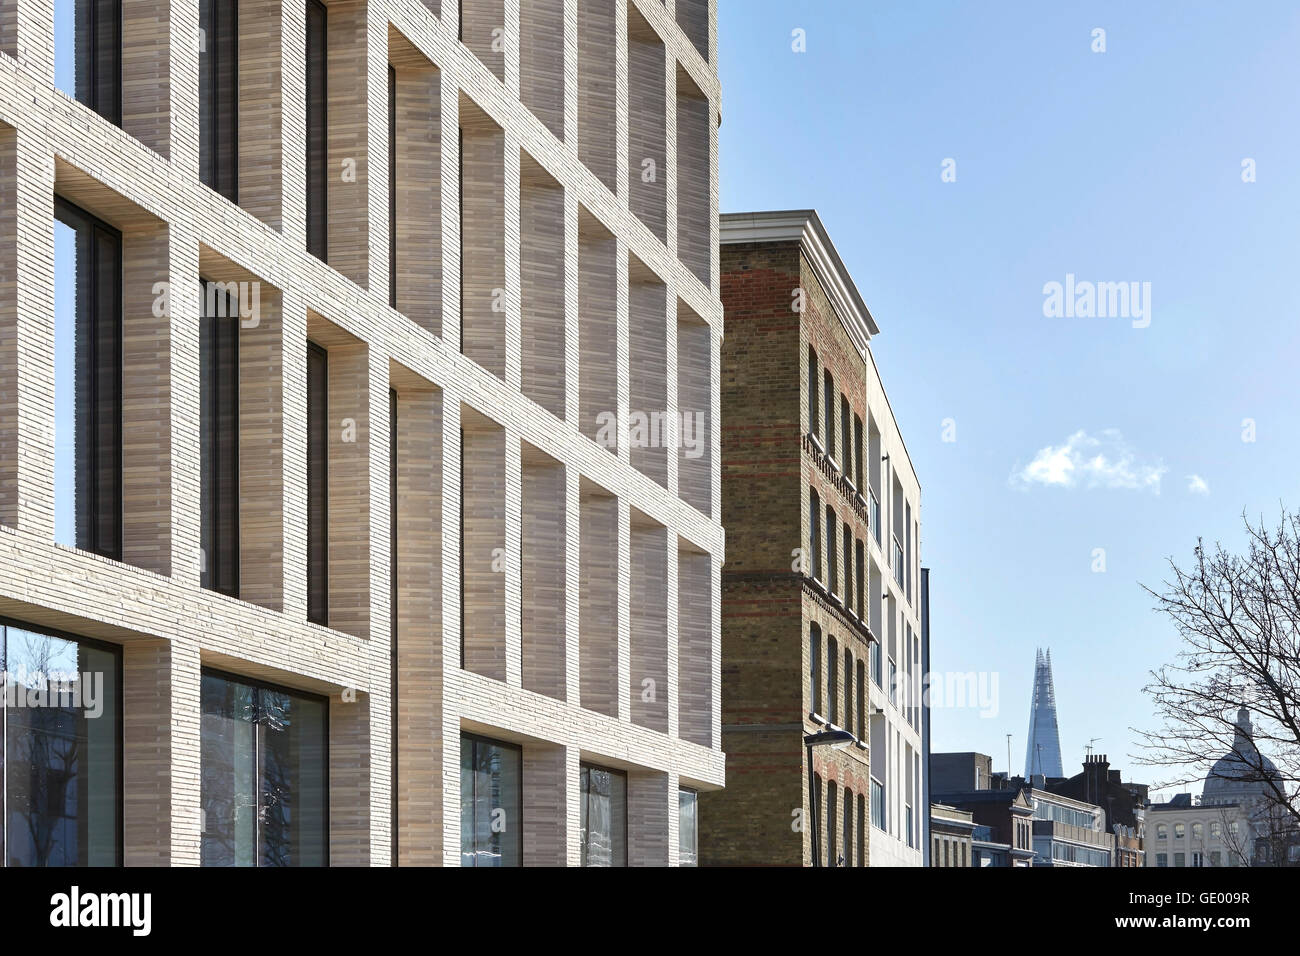 Gegenüberstellung von Fassaden. Turnmill Gebäude, London, Vereinigtes Königreich. Architekt: Piercy & Unternehmen, 2015. Stockfoto